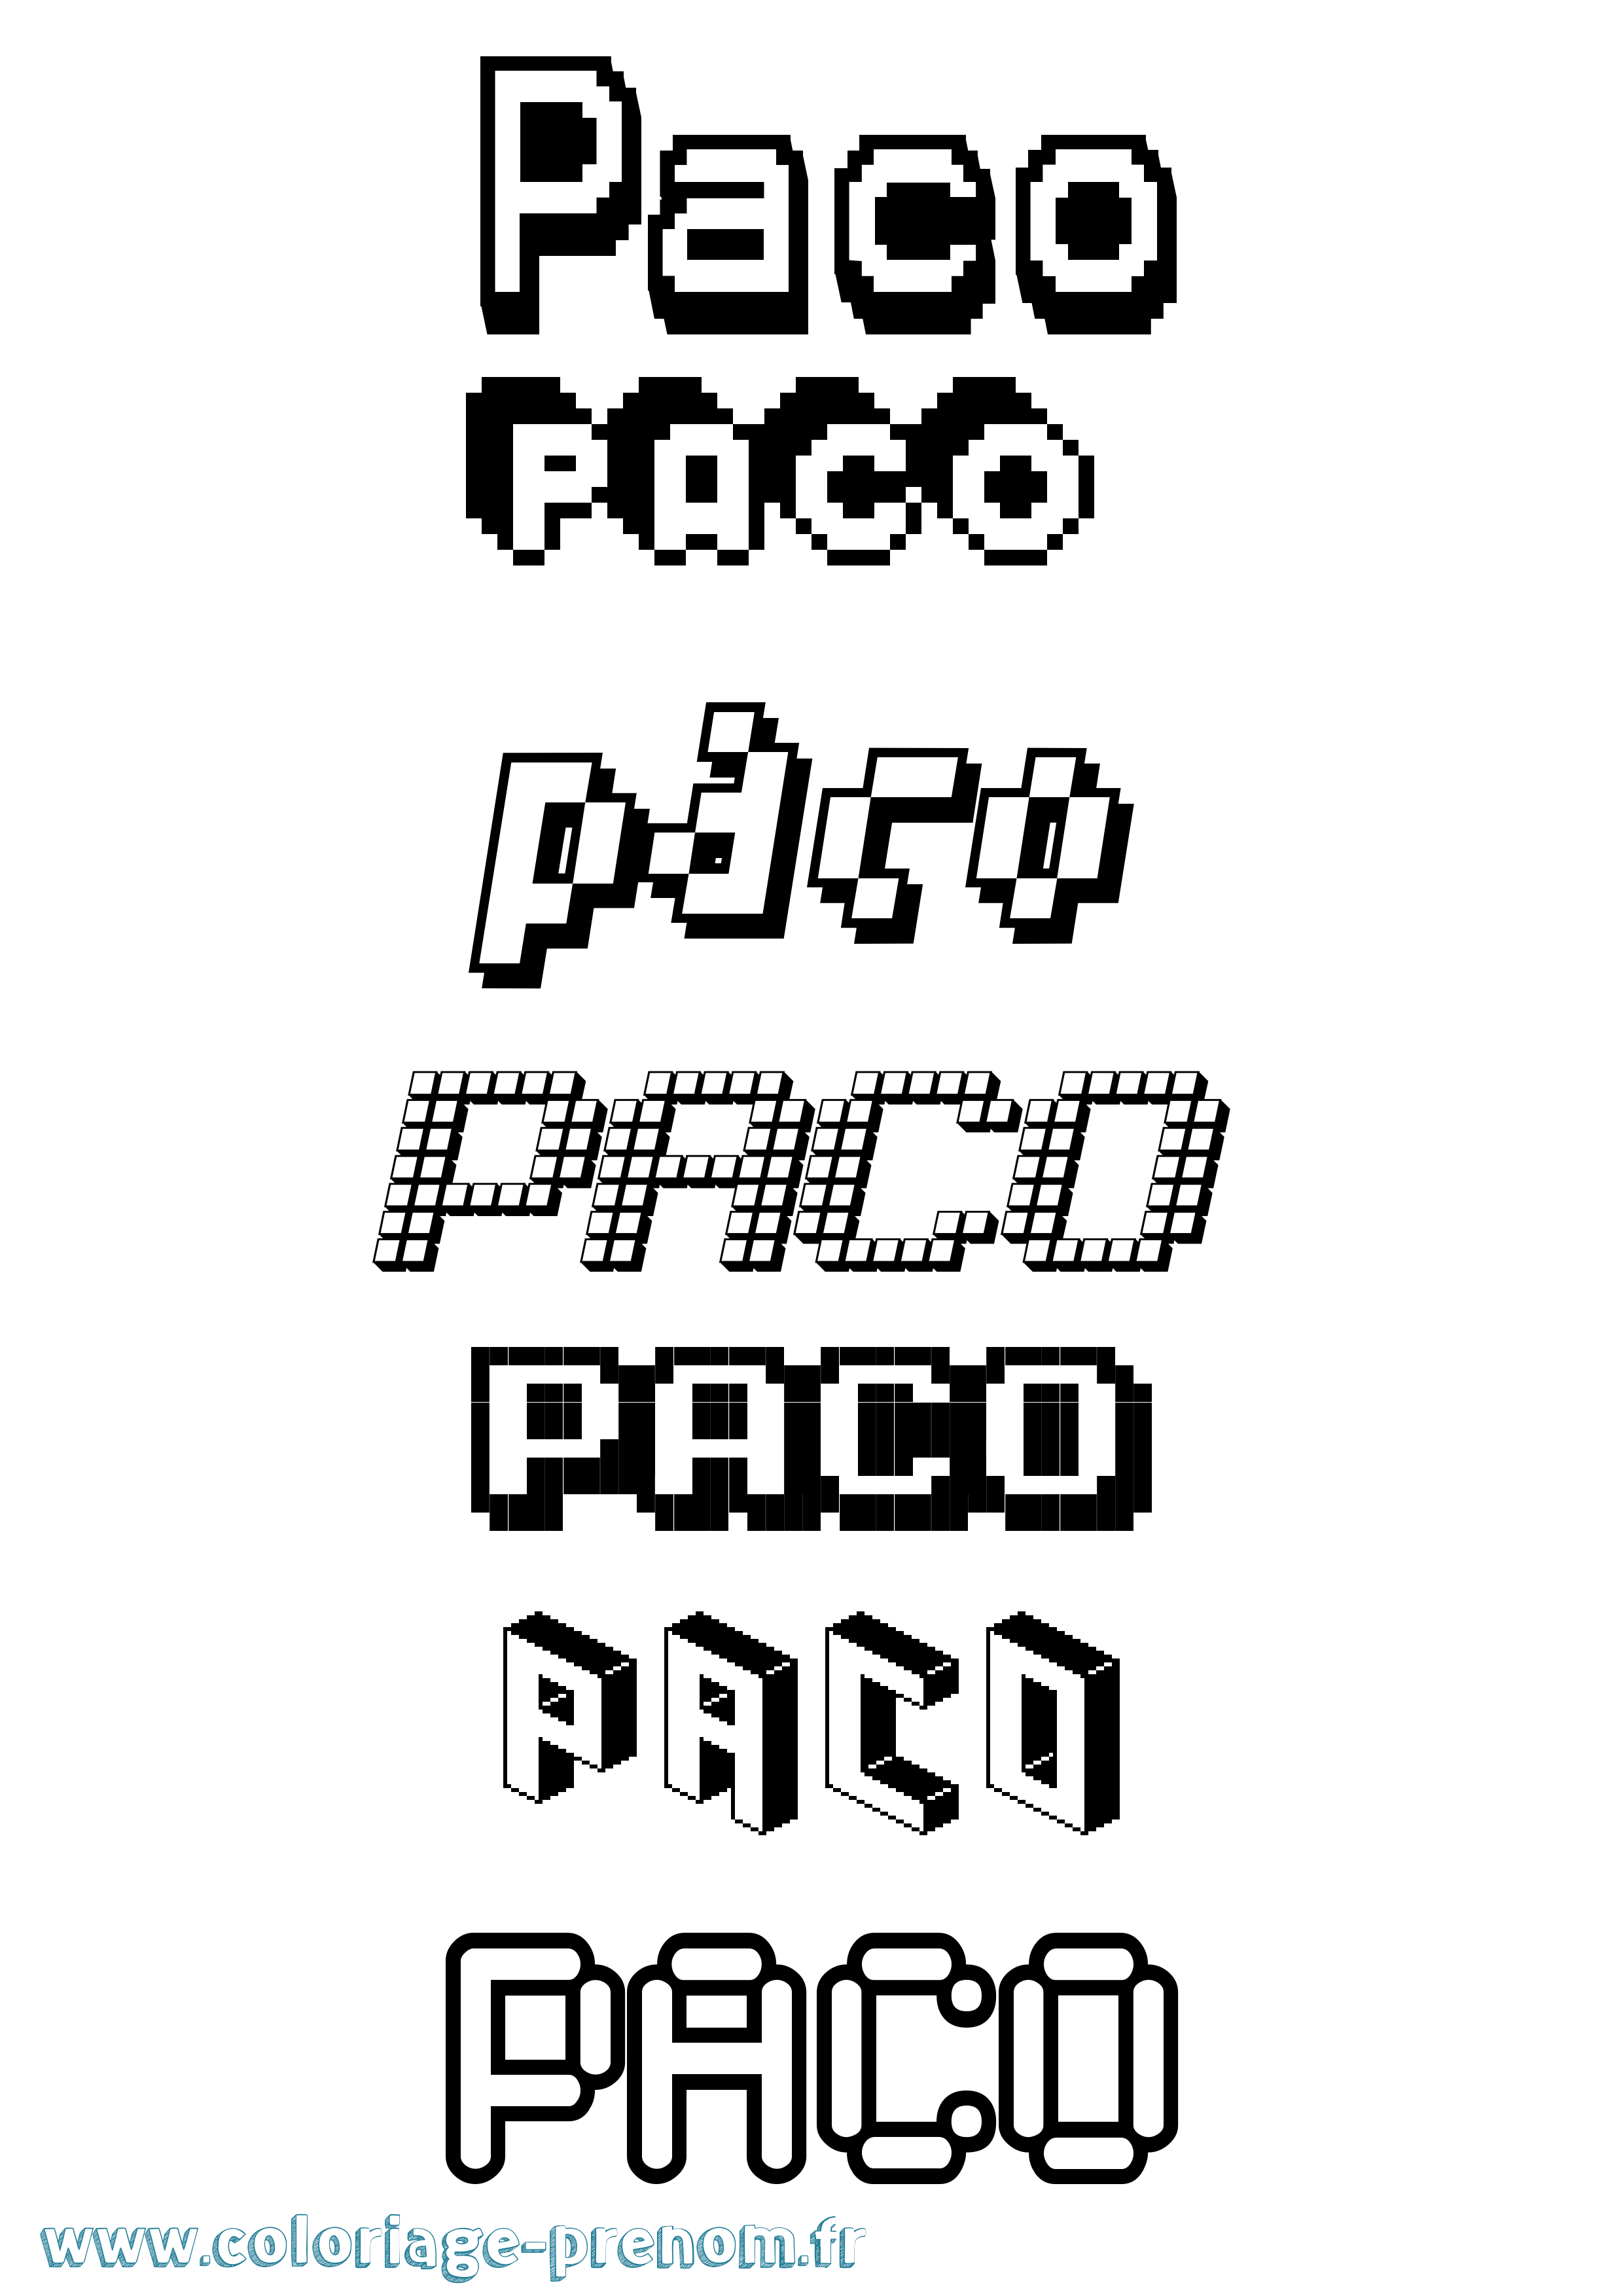 Coloriage prénom Paco Pixel